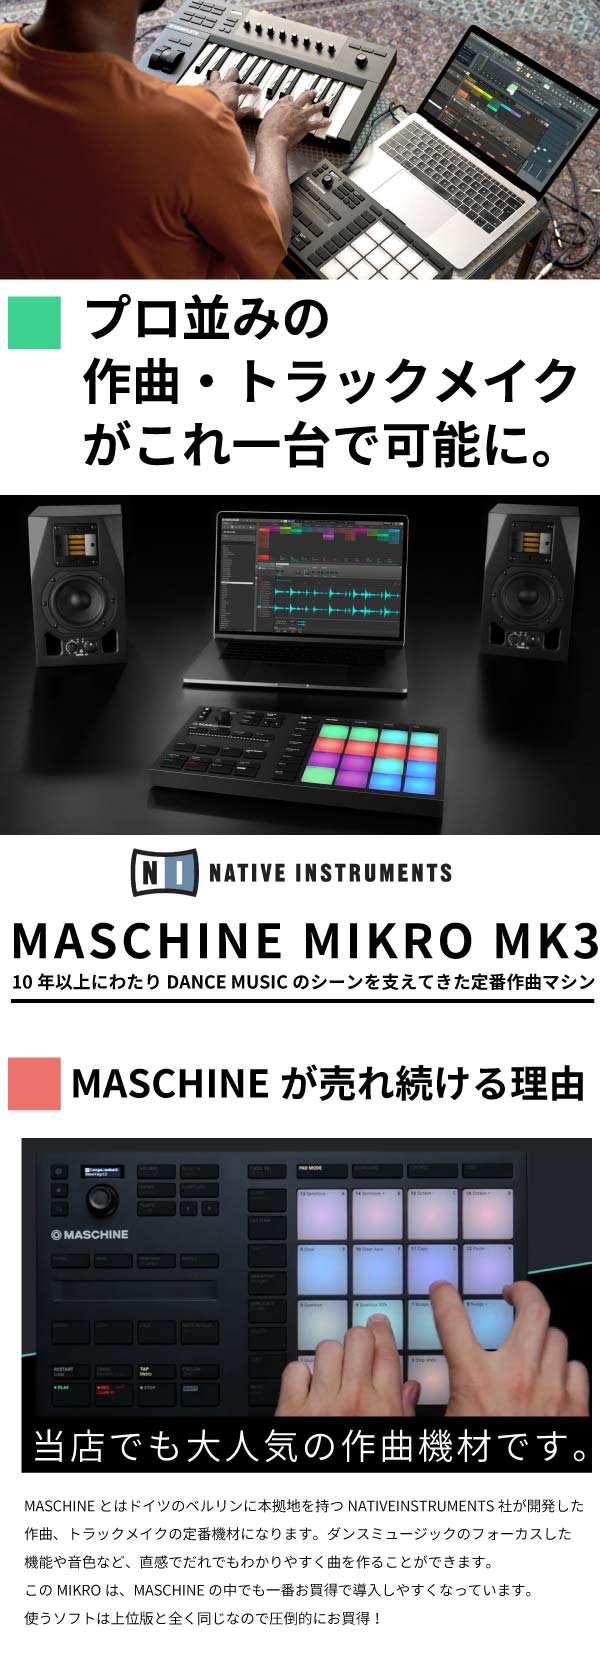 Native Instruments MASCHINE MIKRO MK3 作曲